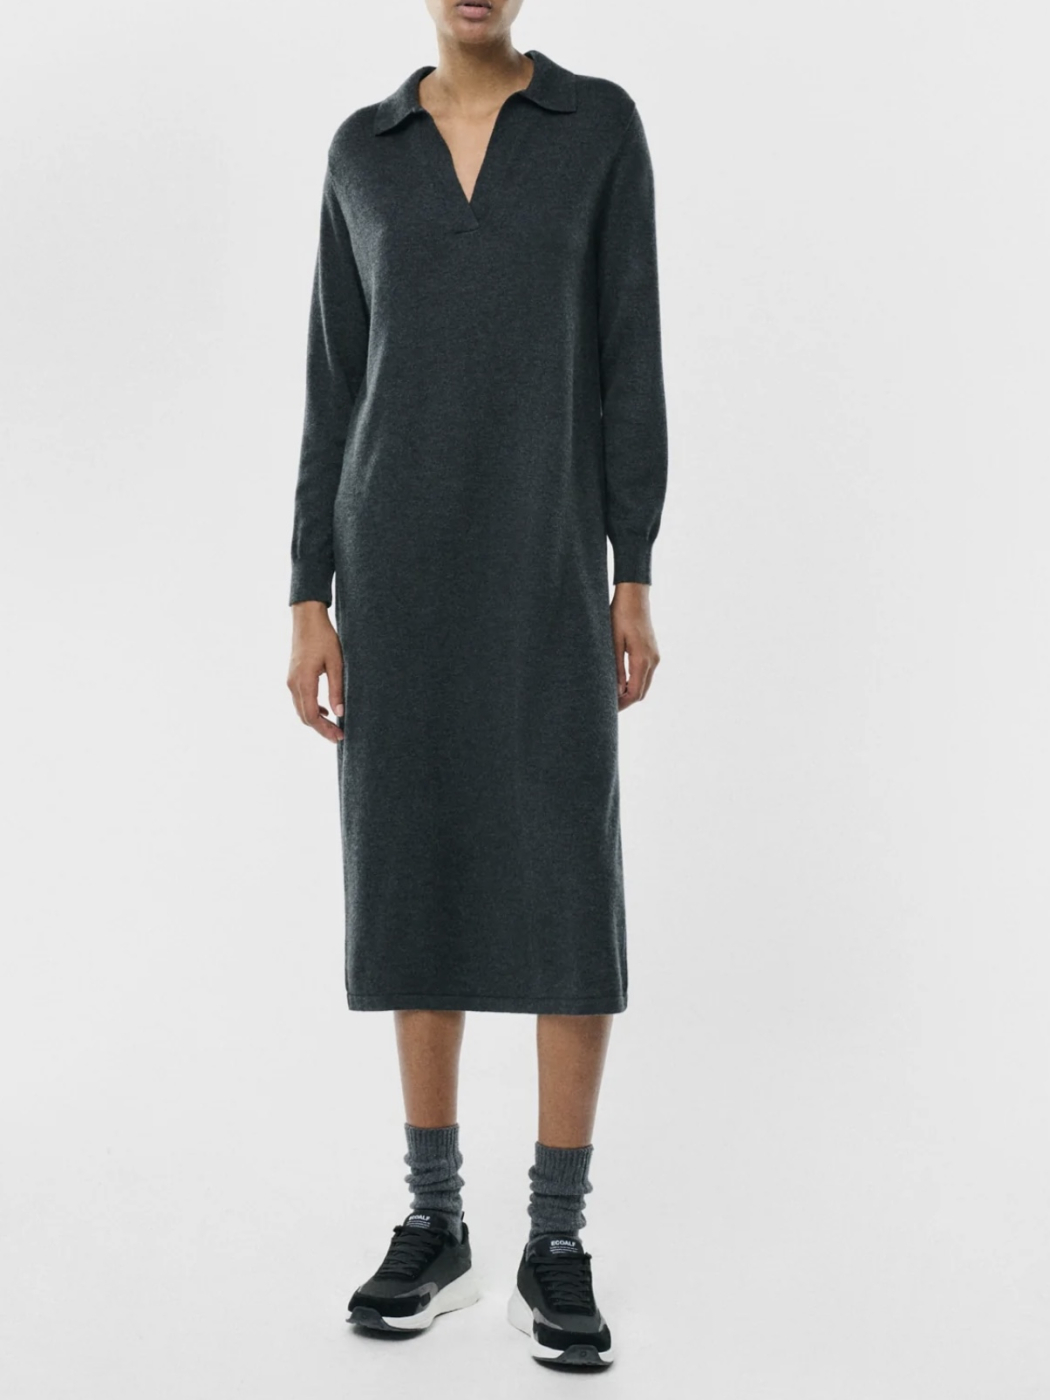 ECOALF vestido en lana color gris oscuro con  capucha